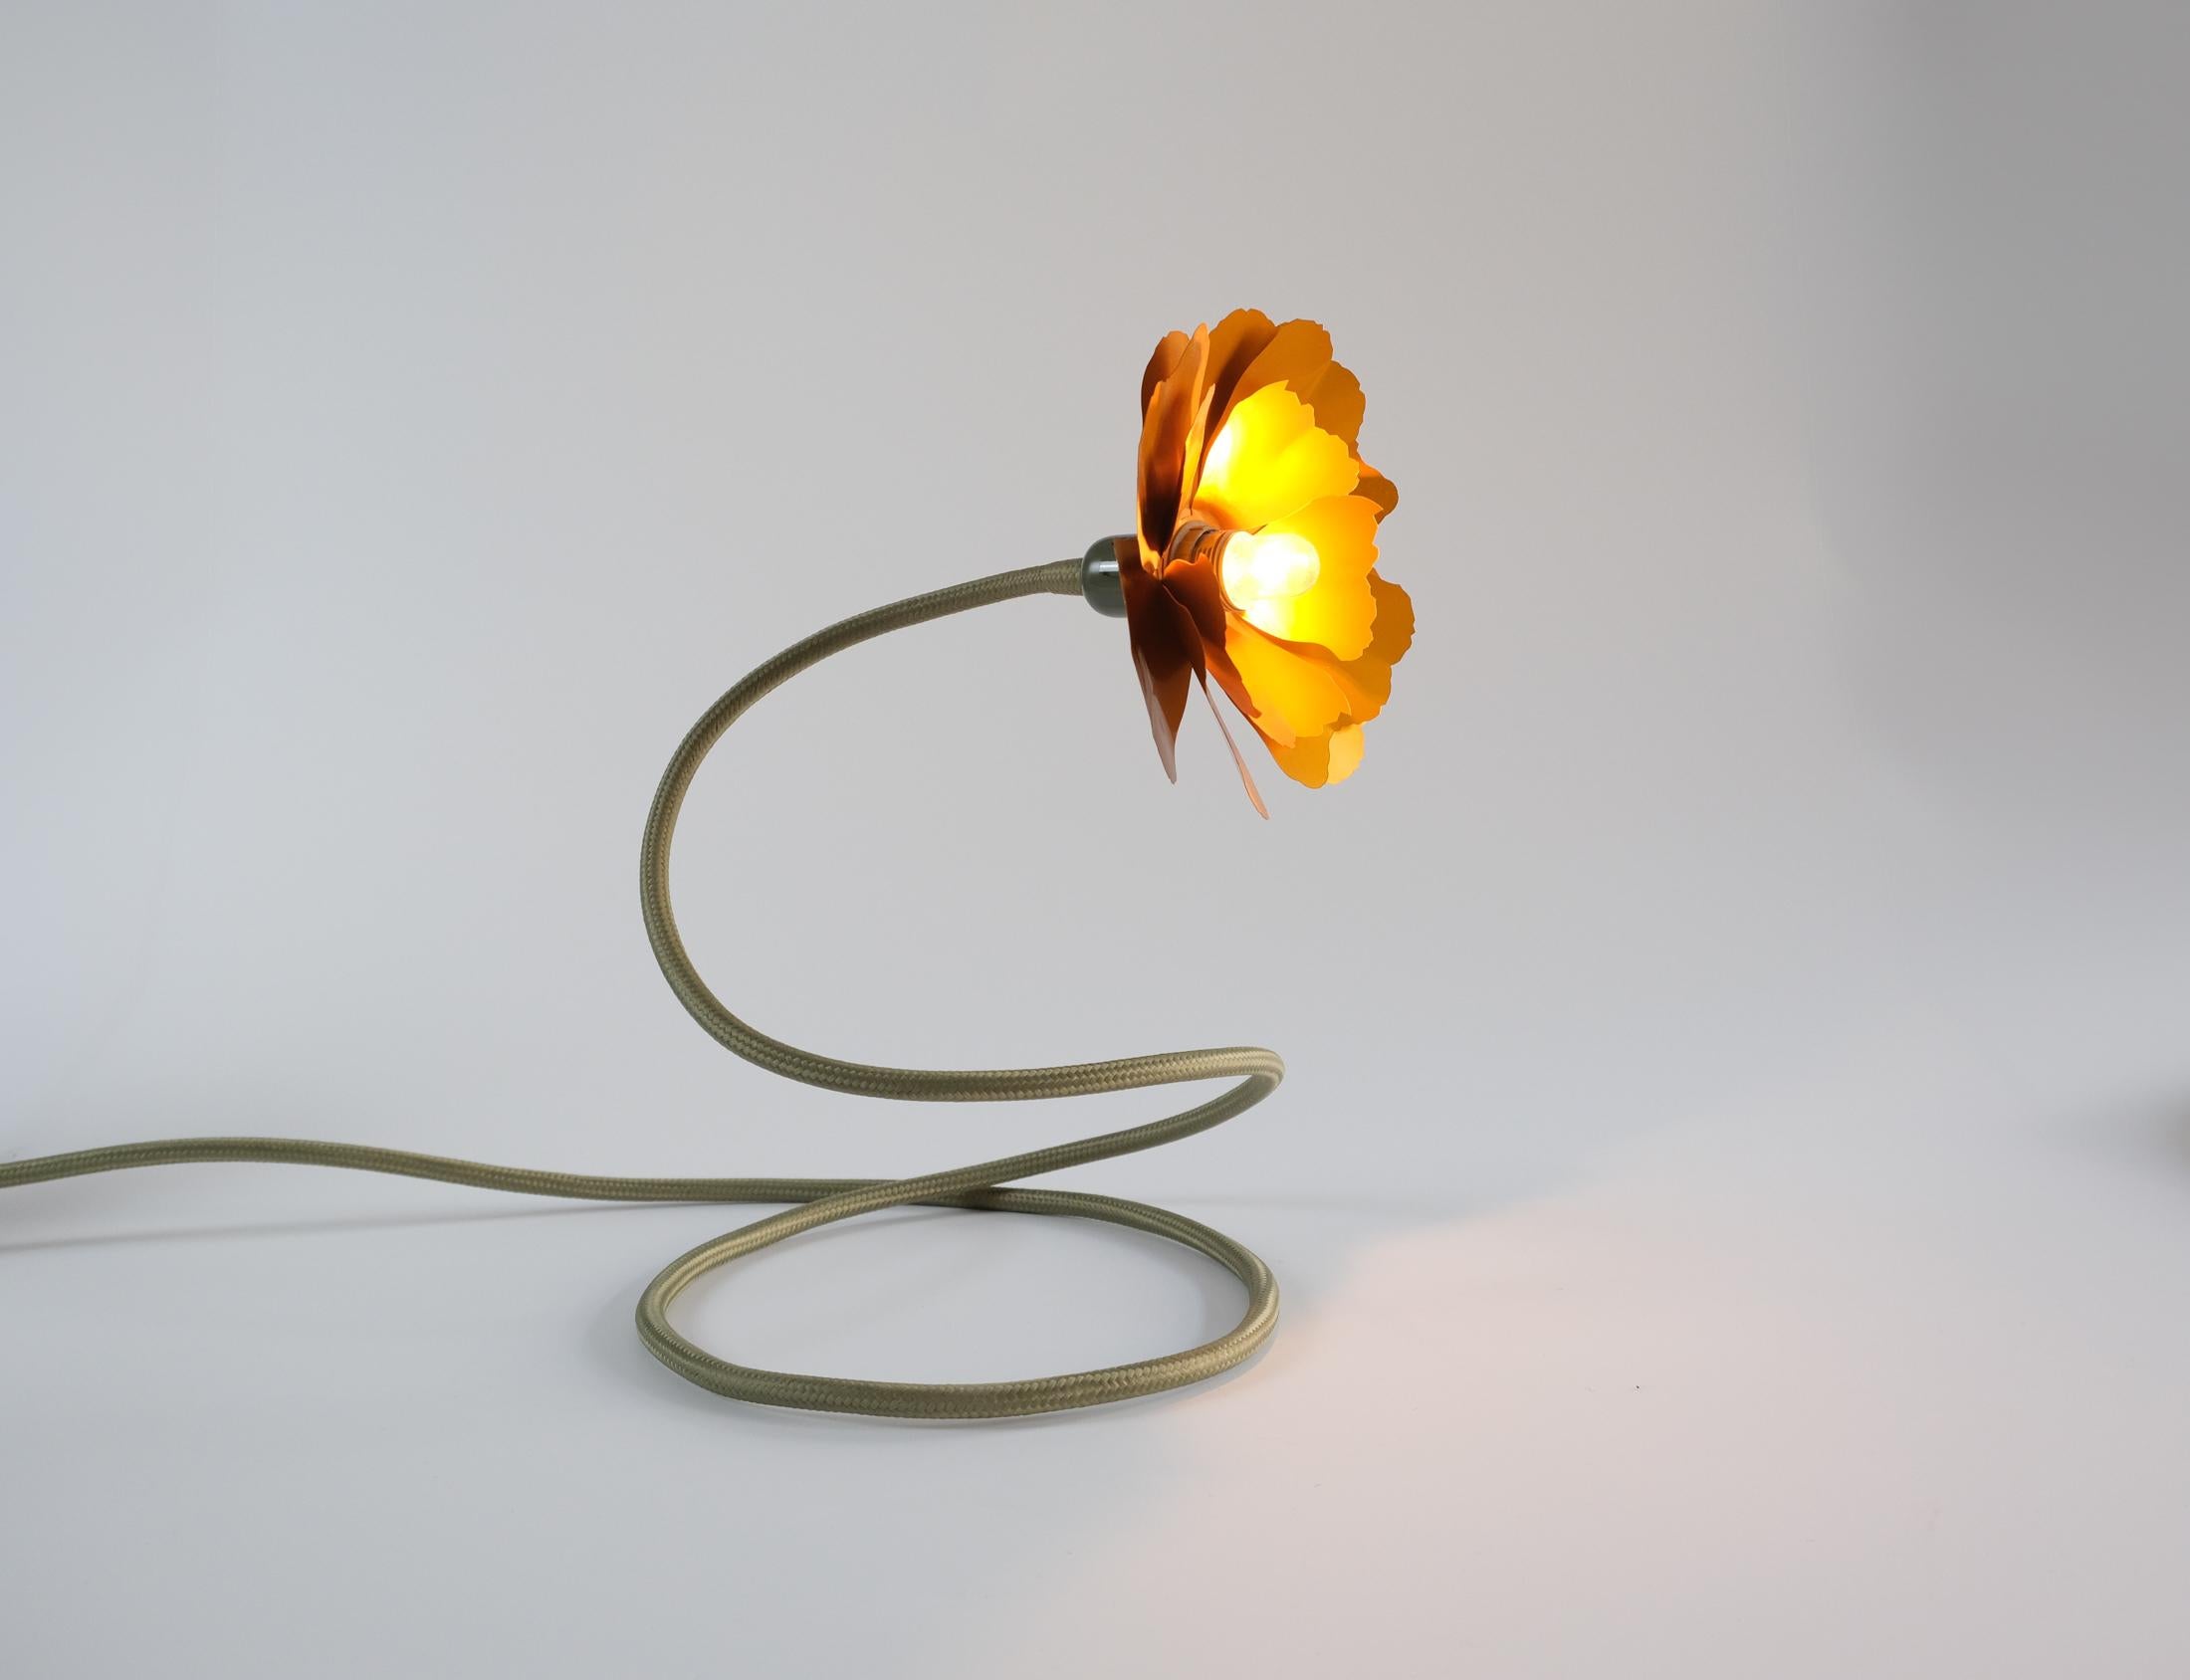 Aluminum Helena Christensen's Flexible Flower Lamp for Habitat “V.I.P” Collection, 2004 For Sale